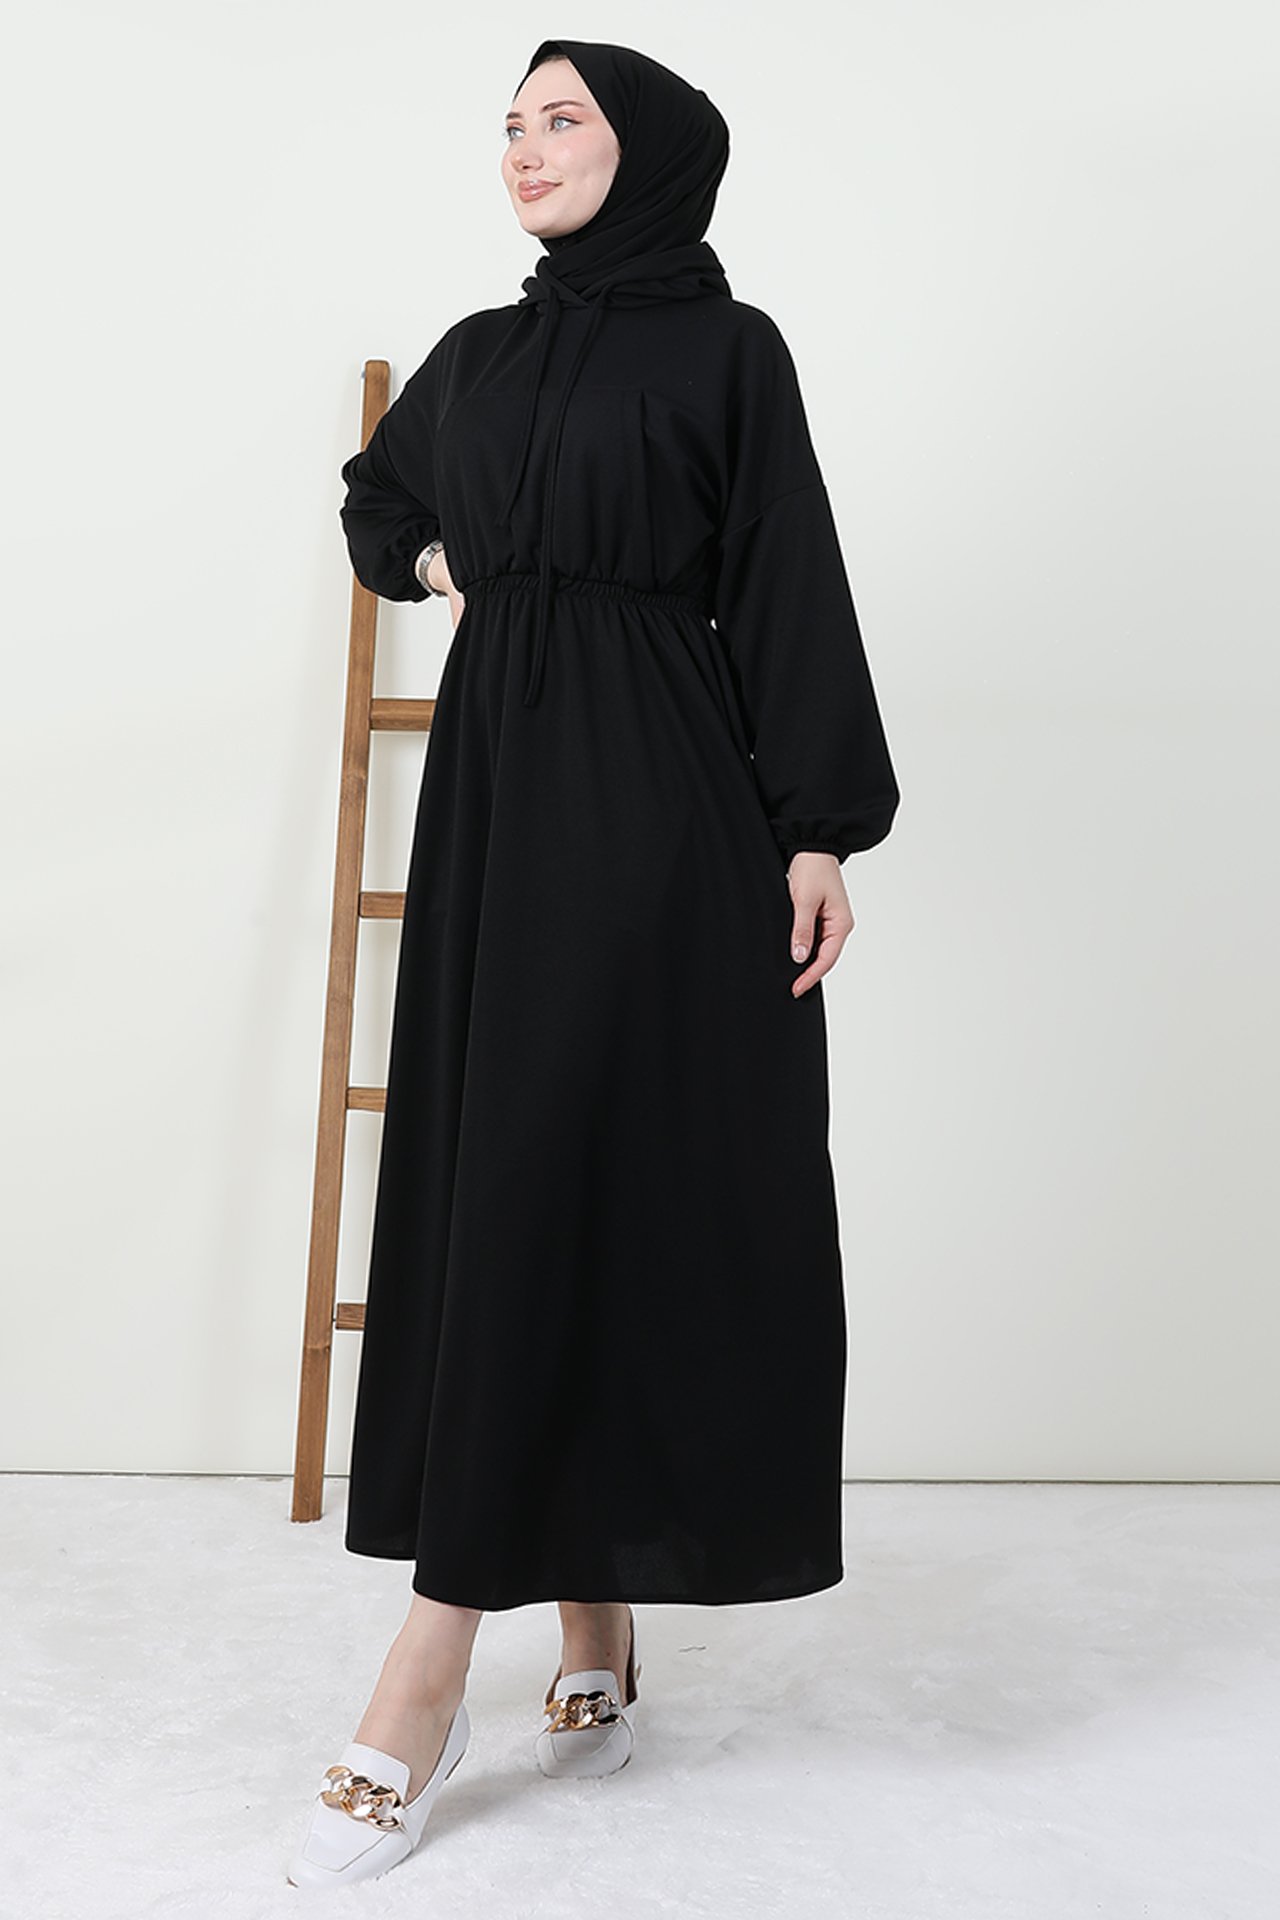 GİZAGİYİM - Göğsü Cepli Kapüşonlu Elbise Siyah